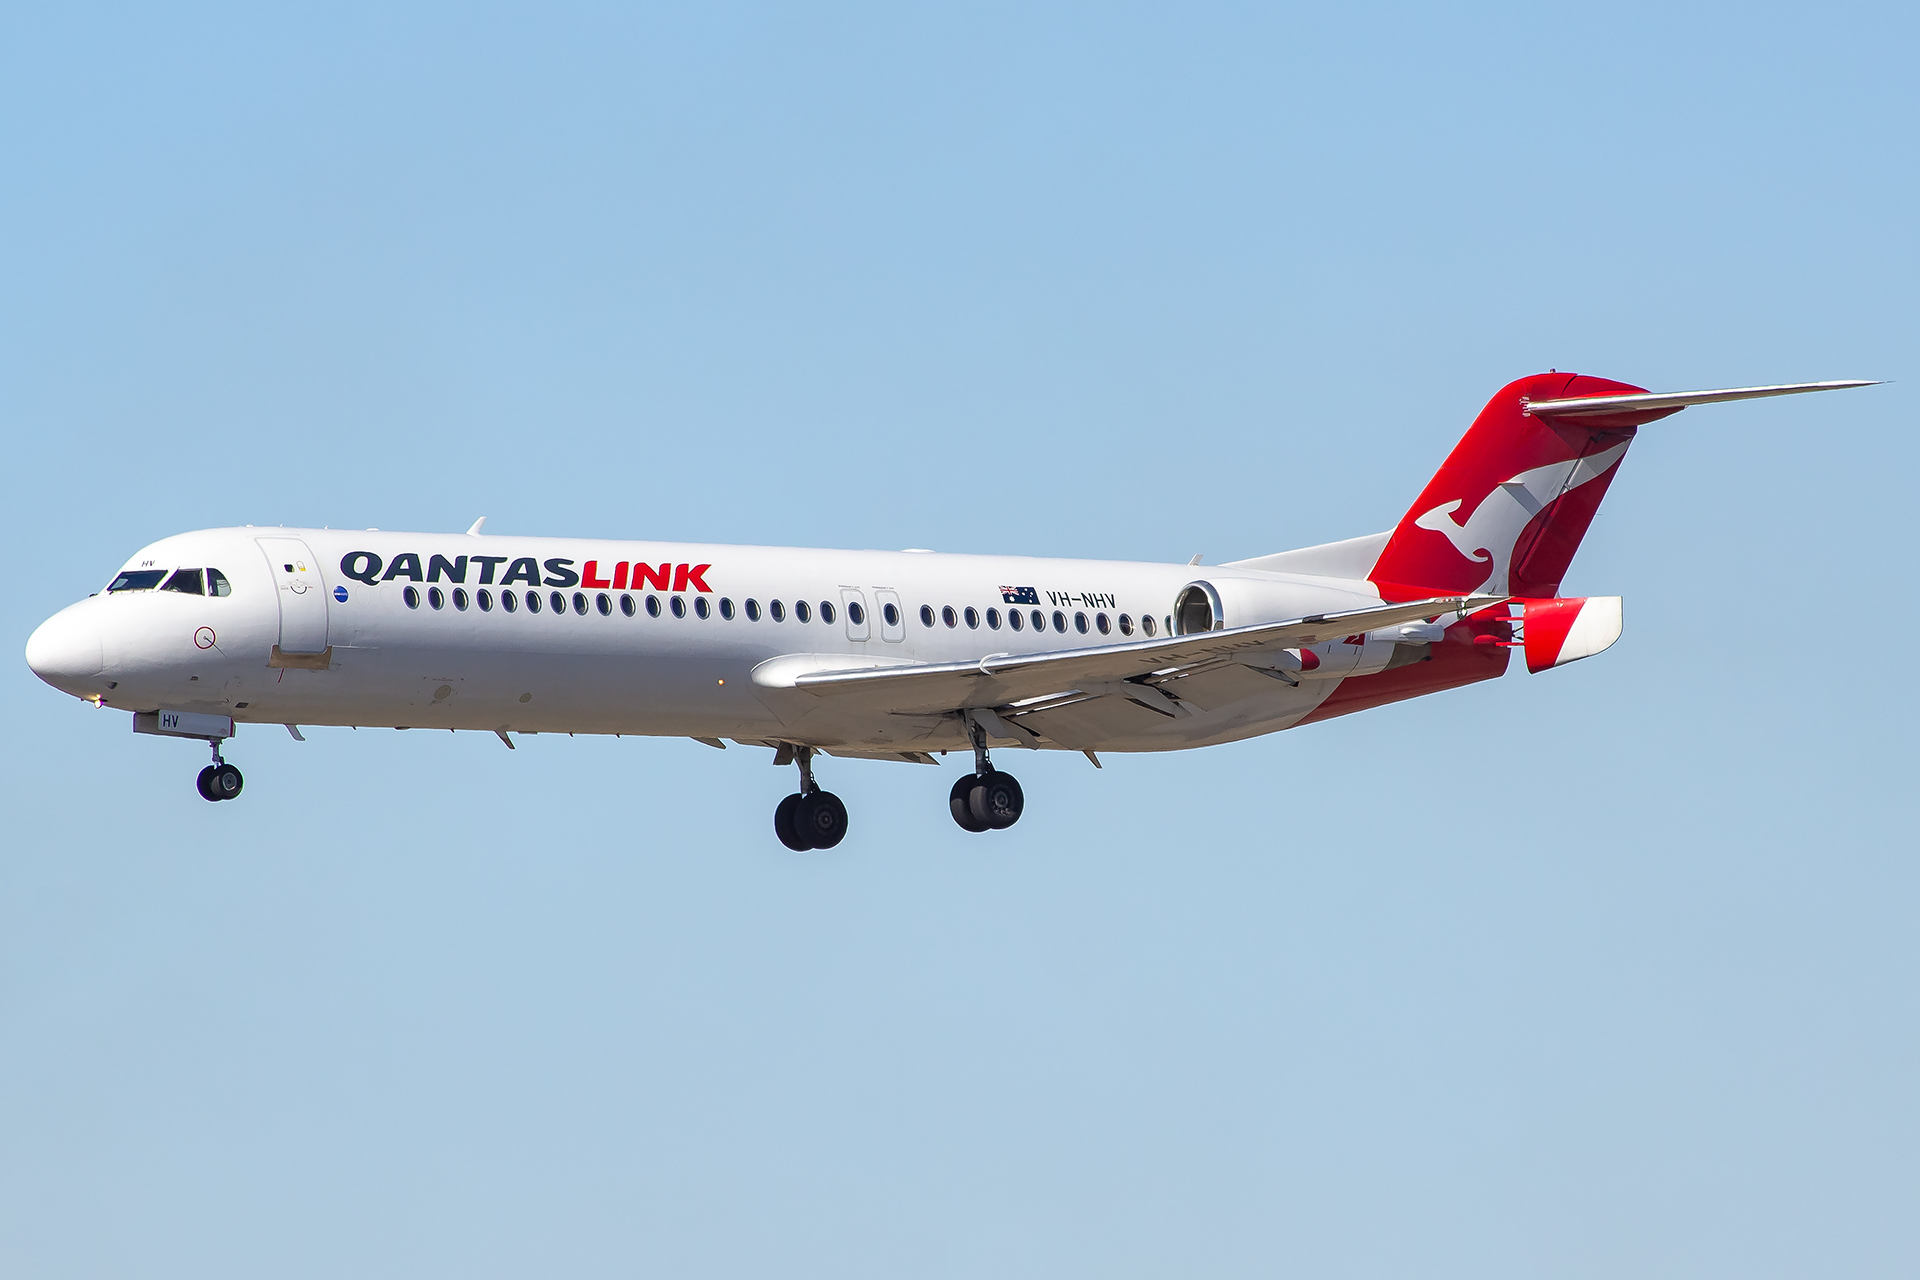 VH-NHV/VHNHV Qantaslink Fokker 100 Airframe Information - AVSpotters.com